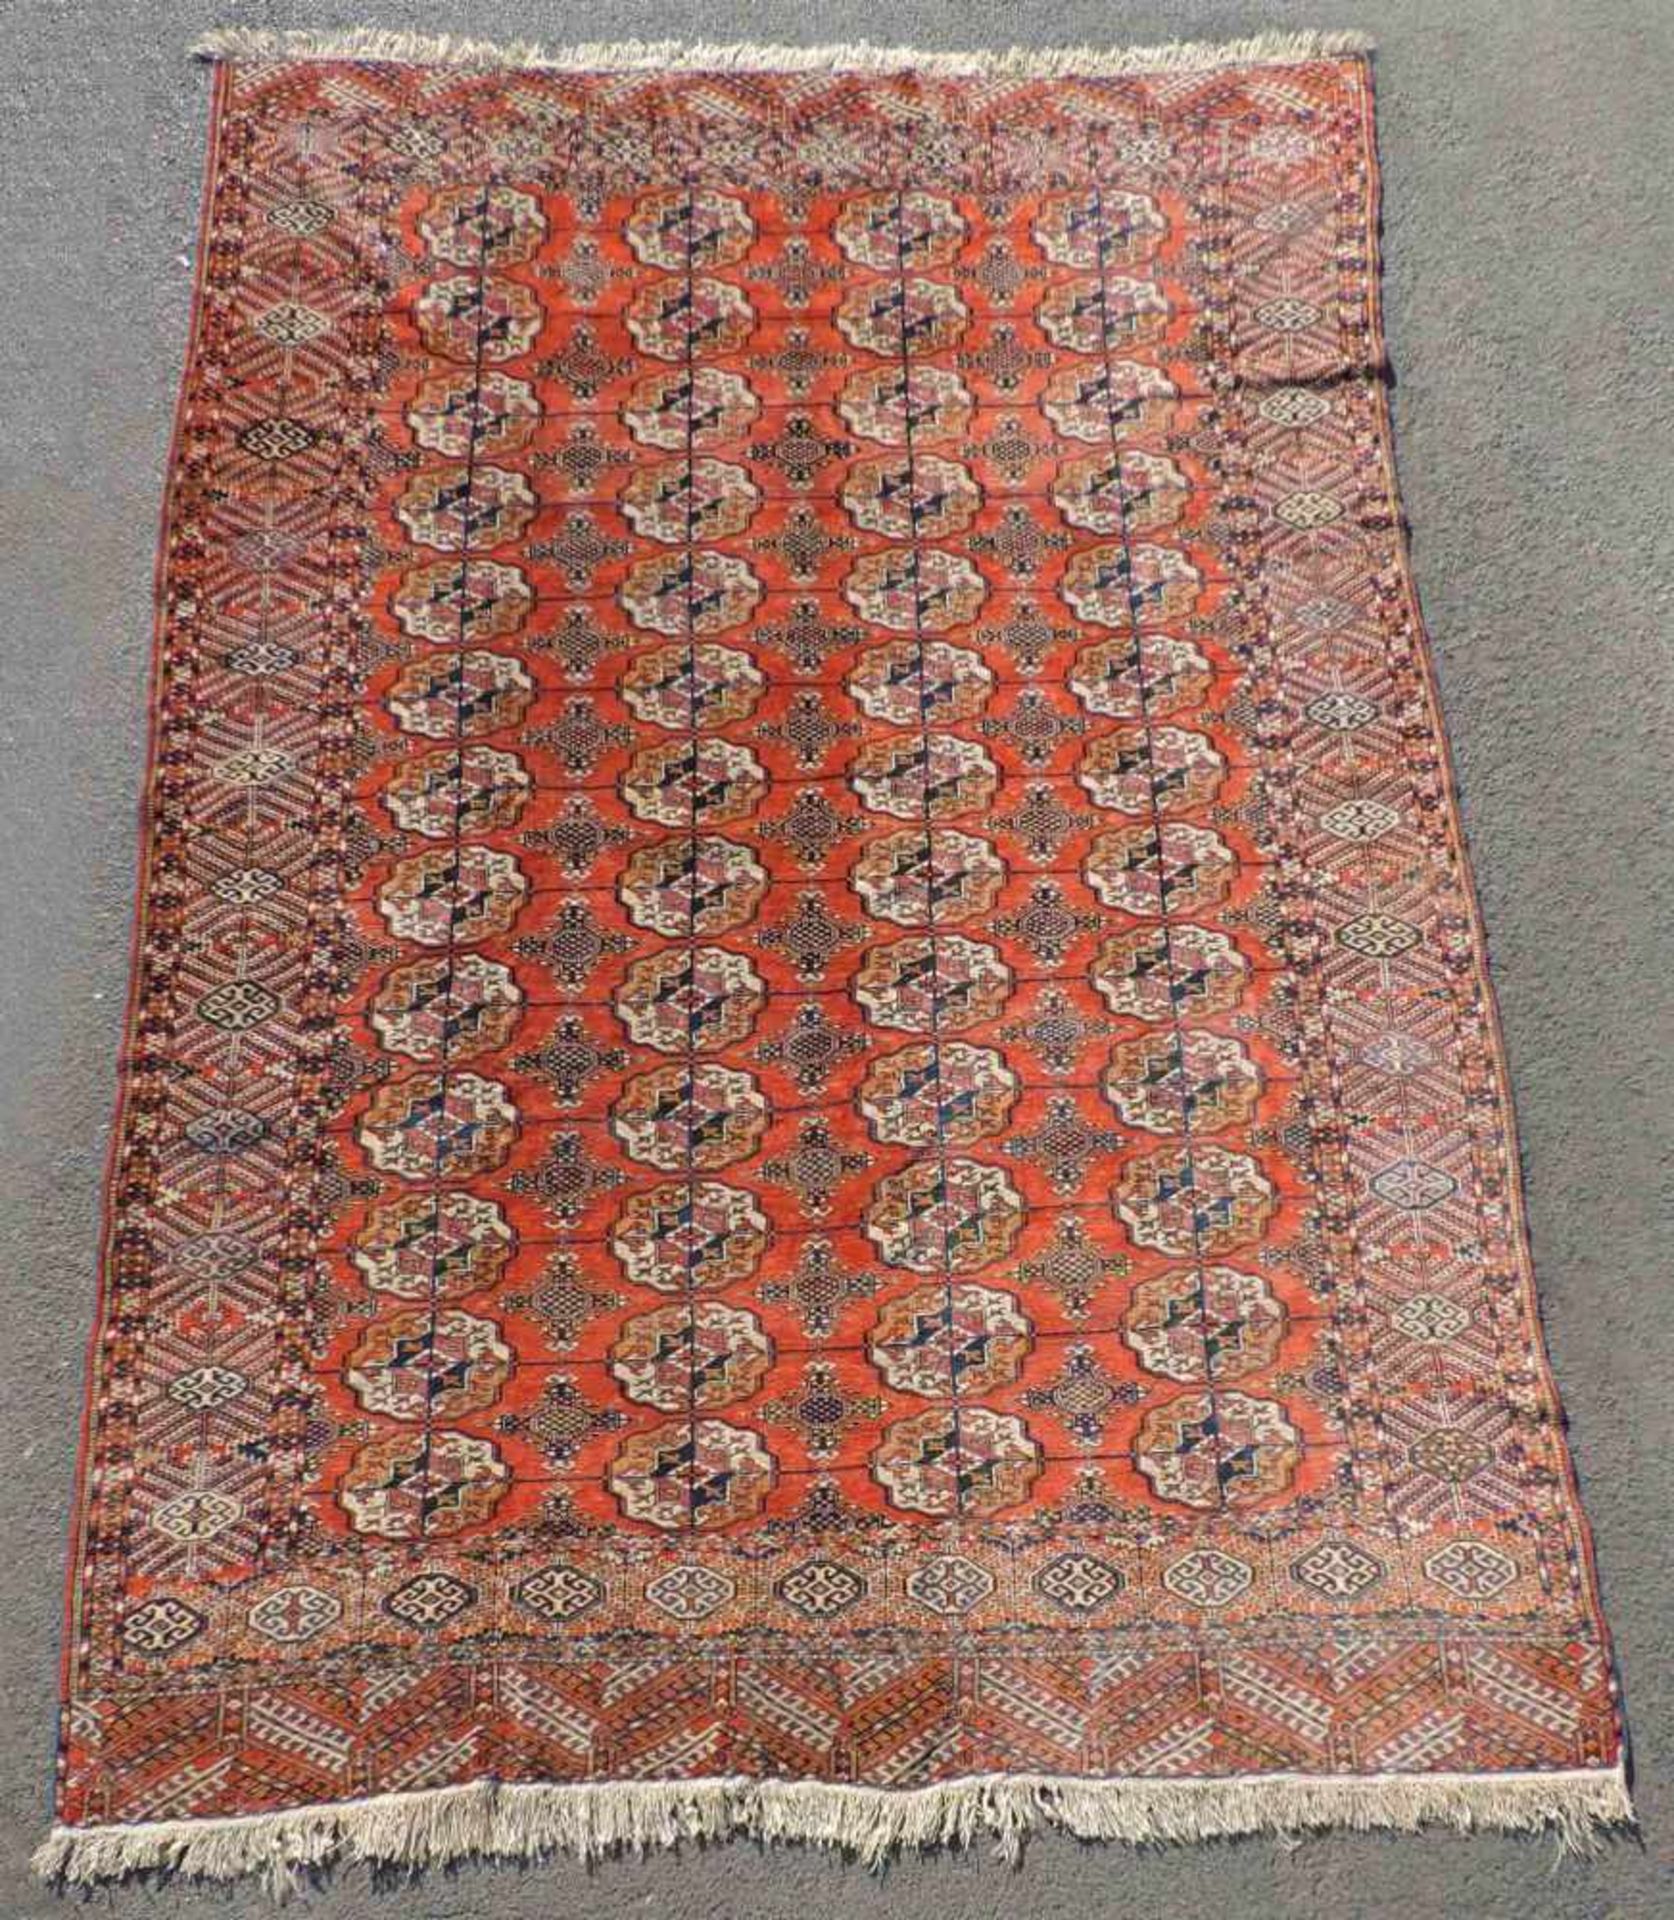 Jomud Stammesteppich. Iran. Antik, um 1910.309 cm x 210 cm. Handgeknüpft. Wolle auf Wolle. Göklan